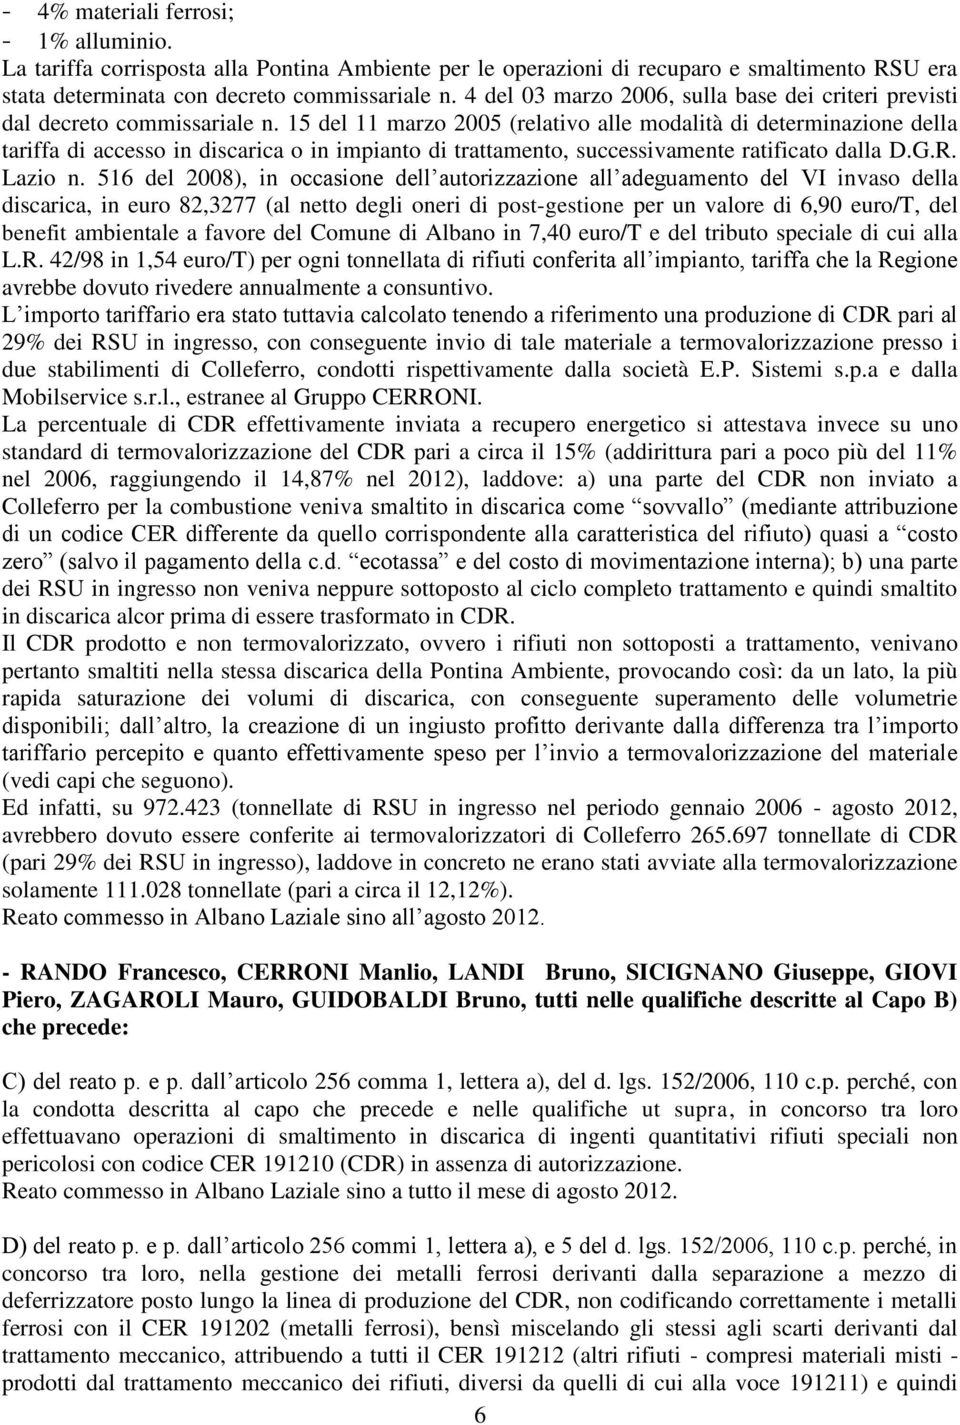 15 del 11 marzo 2005 (relativo alle modalità di determinazione della tariffa di accesso in discarica o in impianto di trattamento, successivamente ratificato dalla D.G.R. Lazio n.